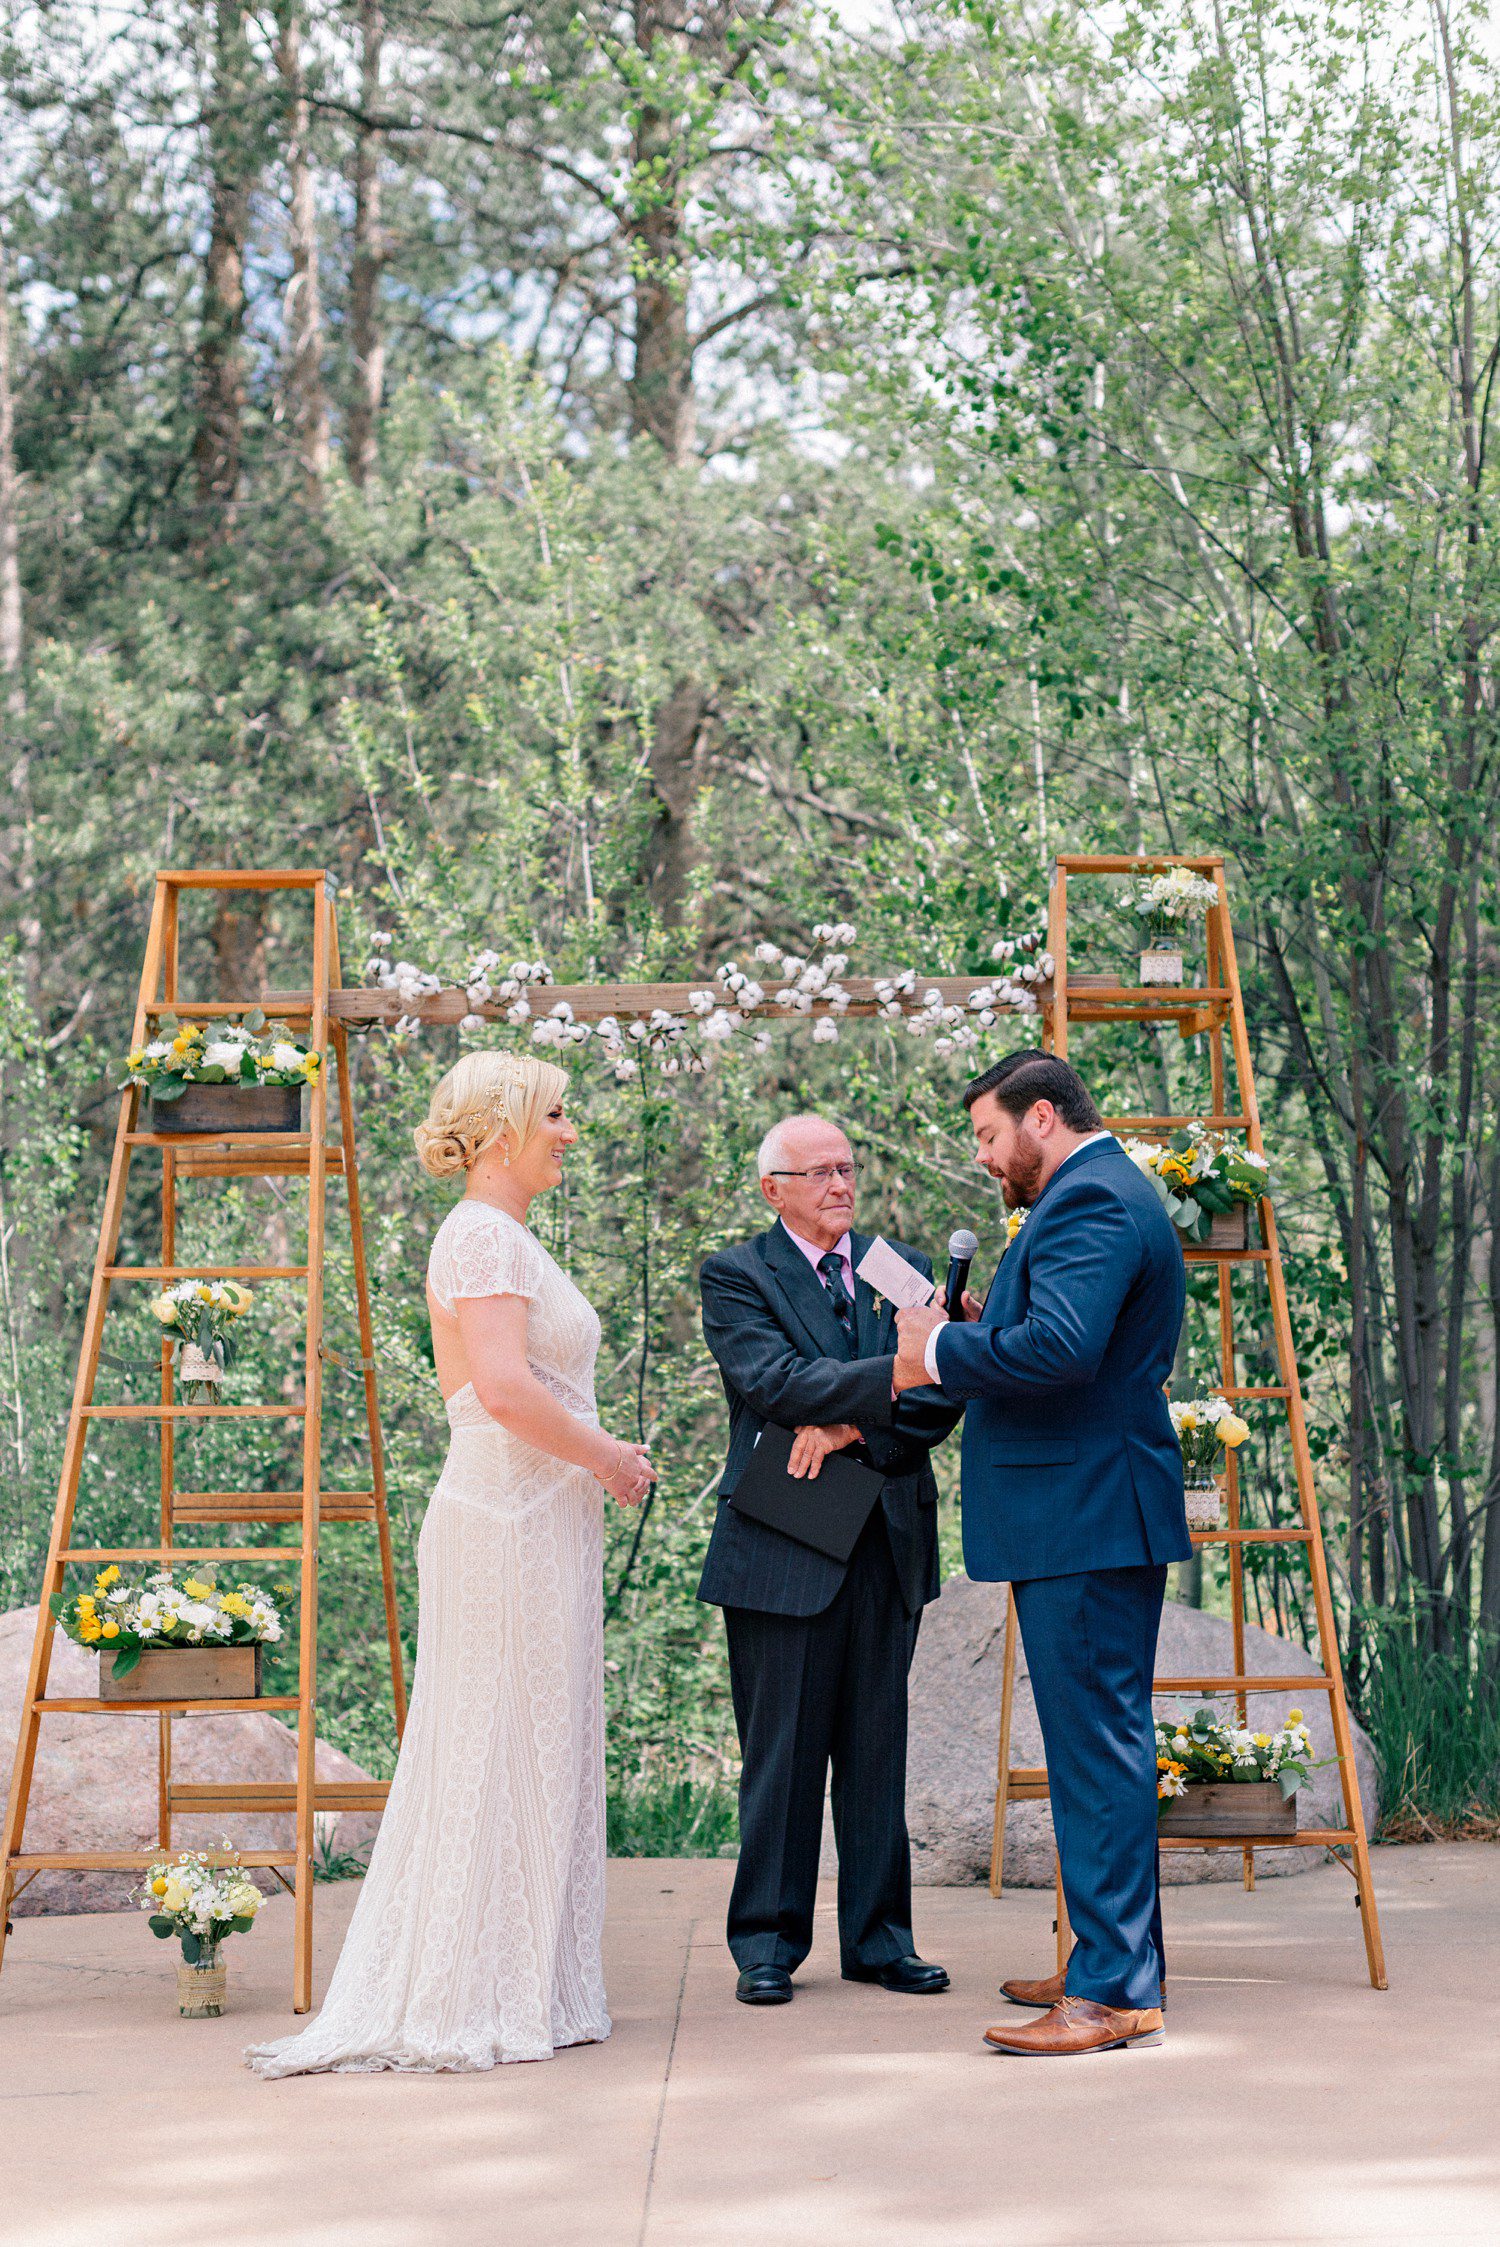 Outdoor wedding ceremony at Donovan Pavilion in Vail Colorado. 